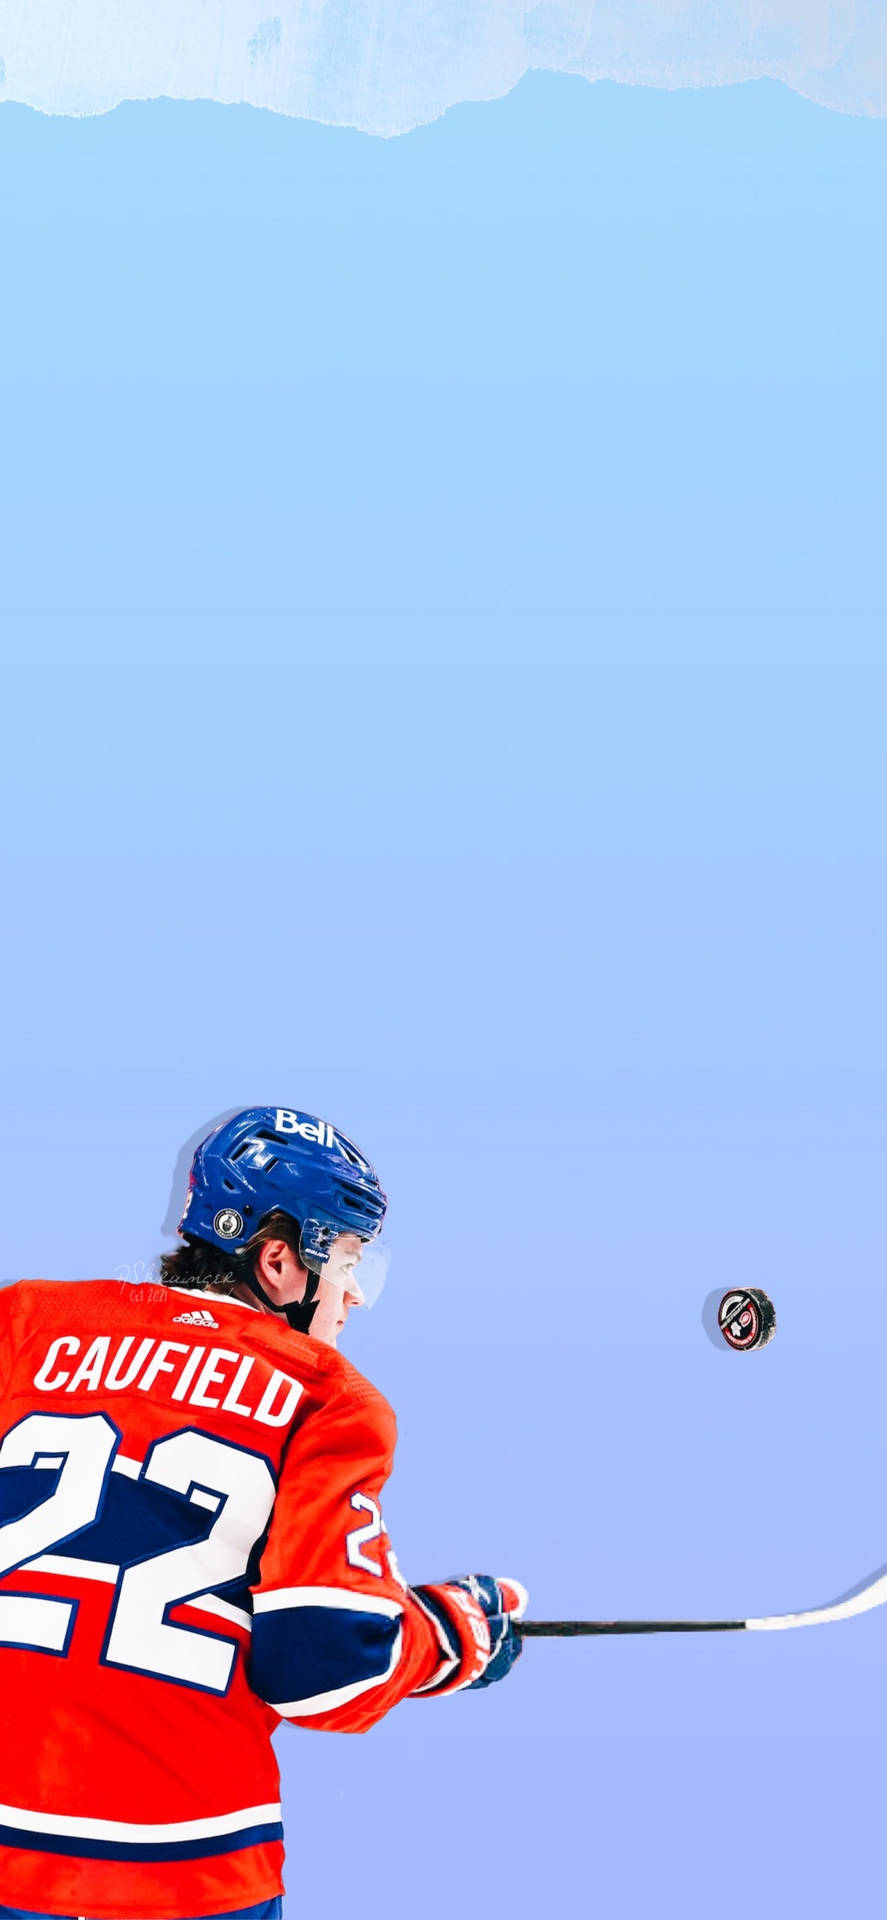 Colecaufield, Us-amerikanischer Eishockeyspieler Wallpaper